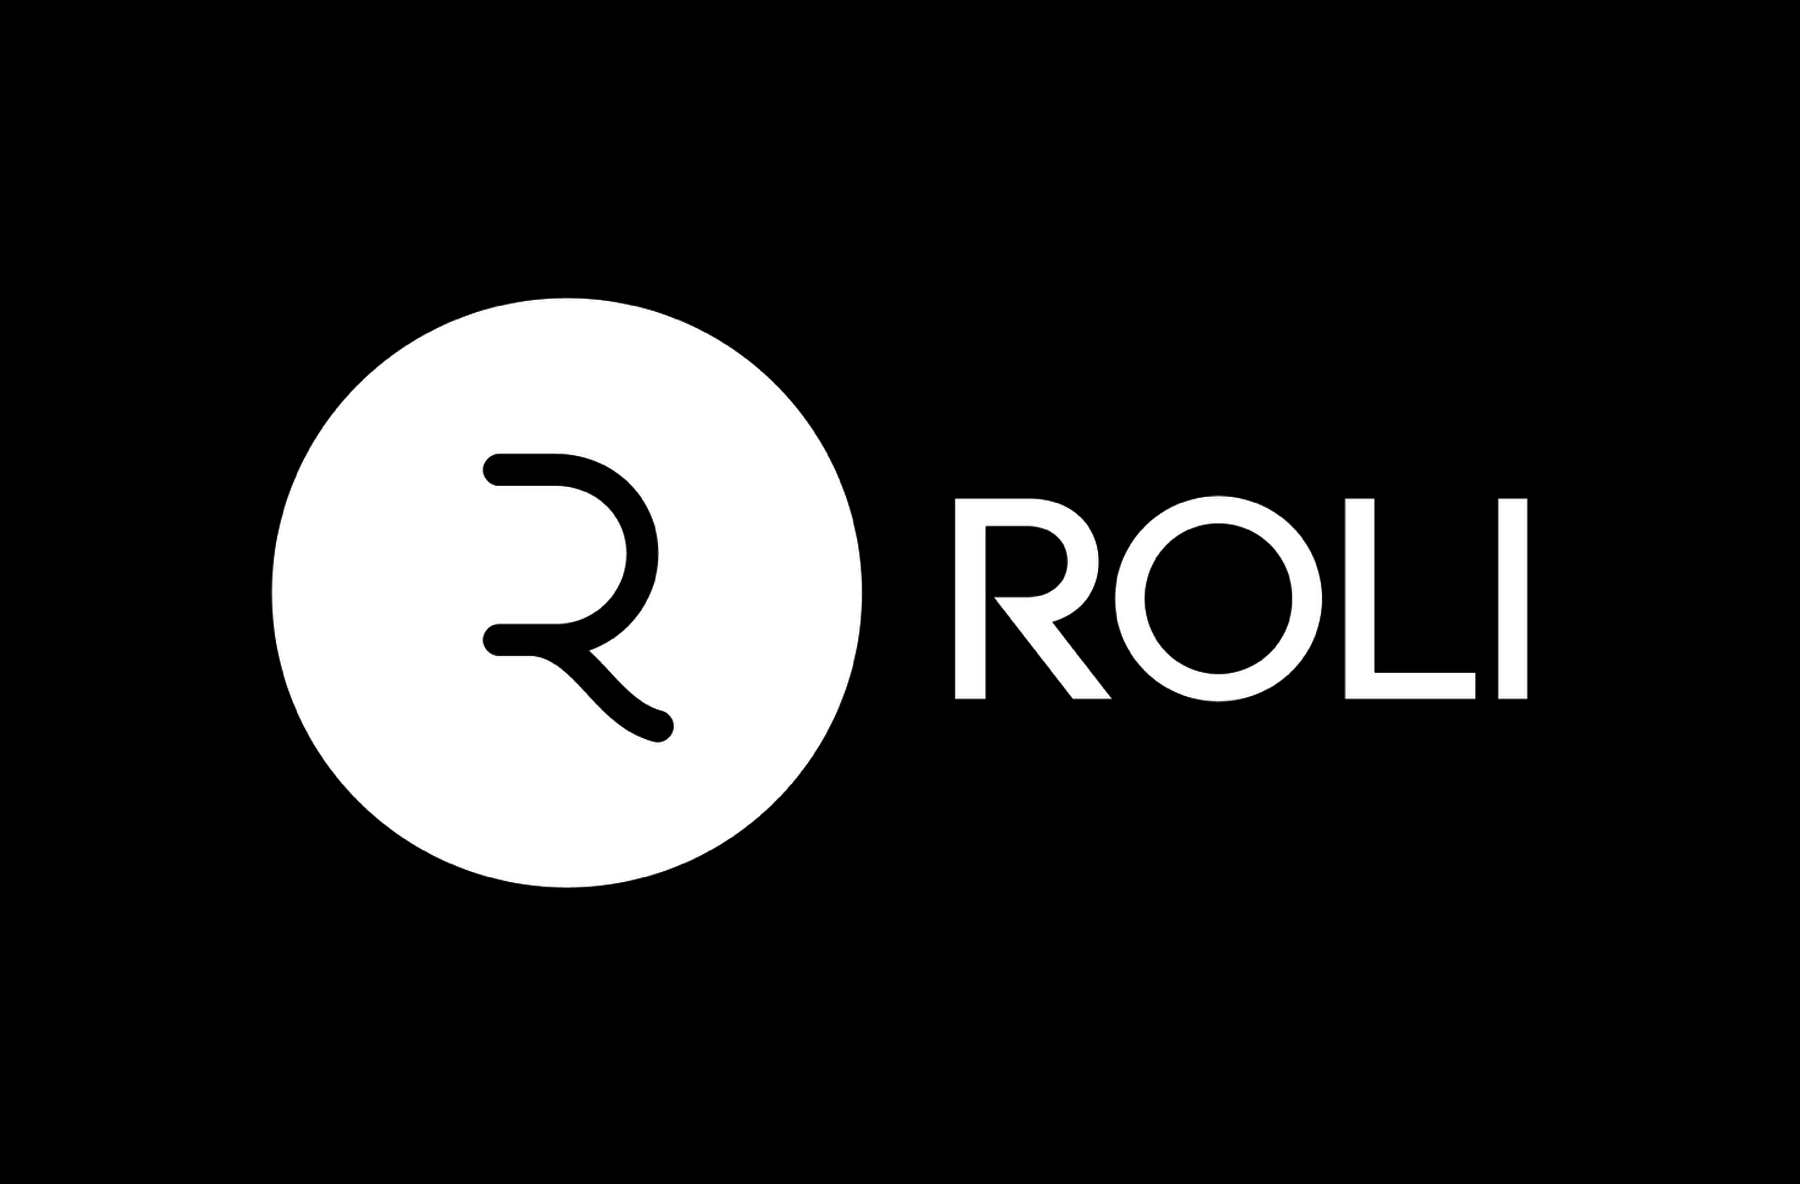 Роли роли песня английская. Роли логотип. Ролис лого. Roly логотип. Rollis логотип PNG.